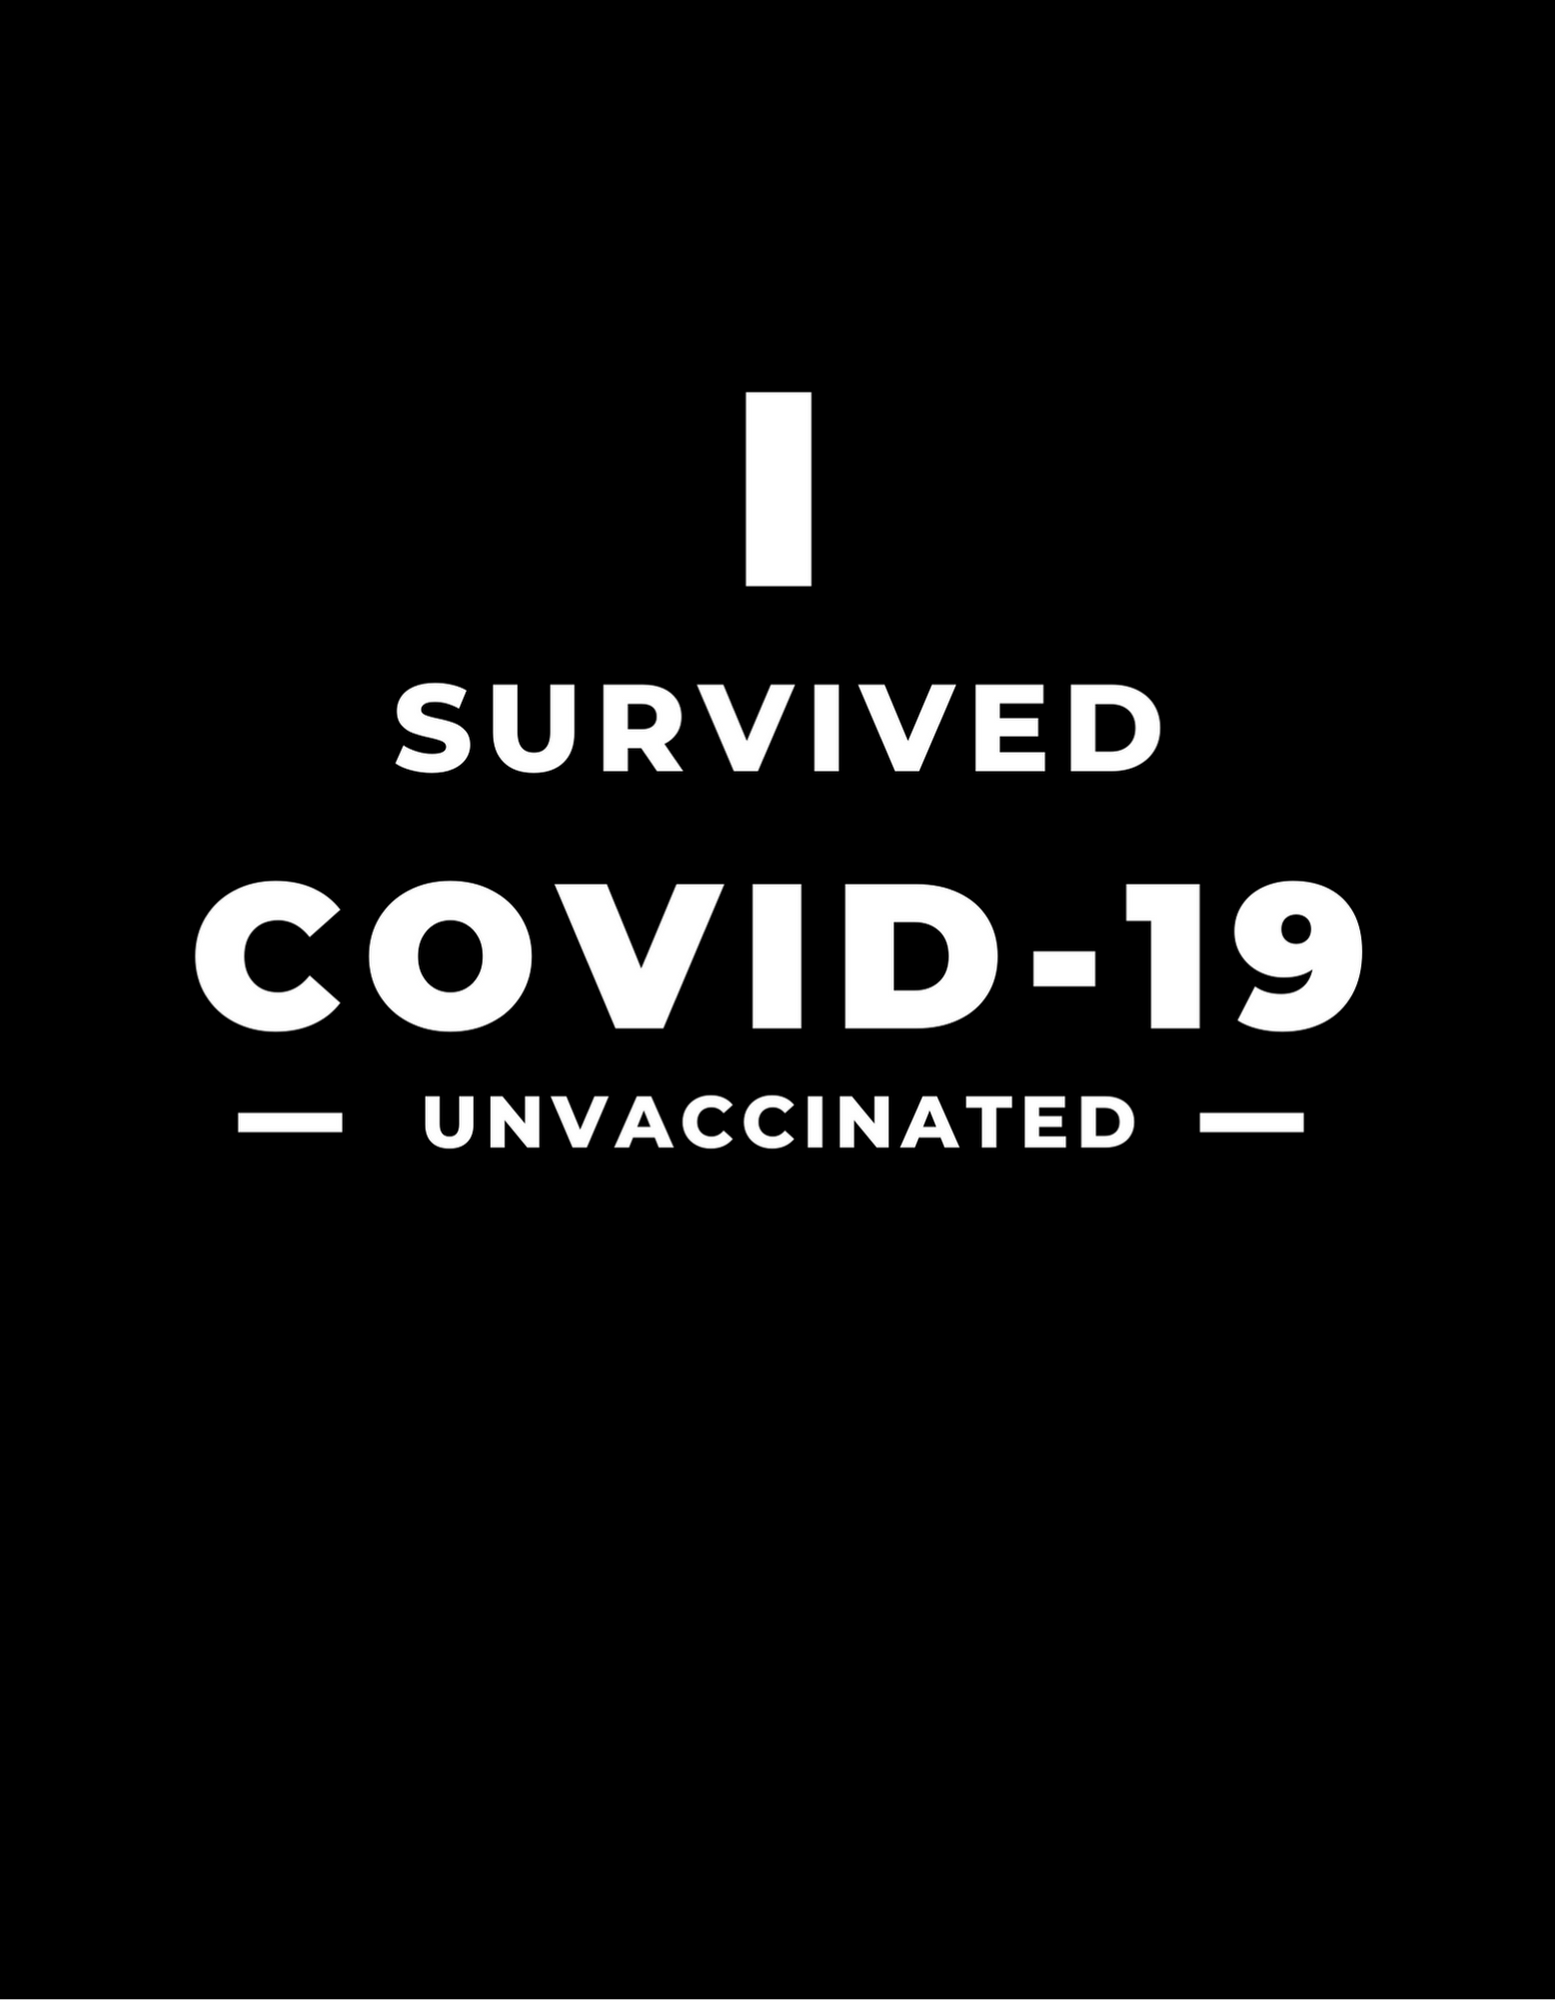 In Survid Covid-19 Sticker